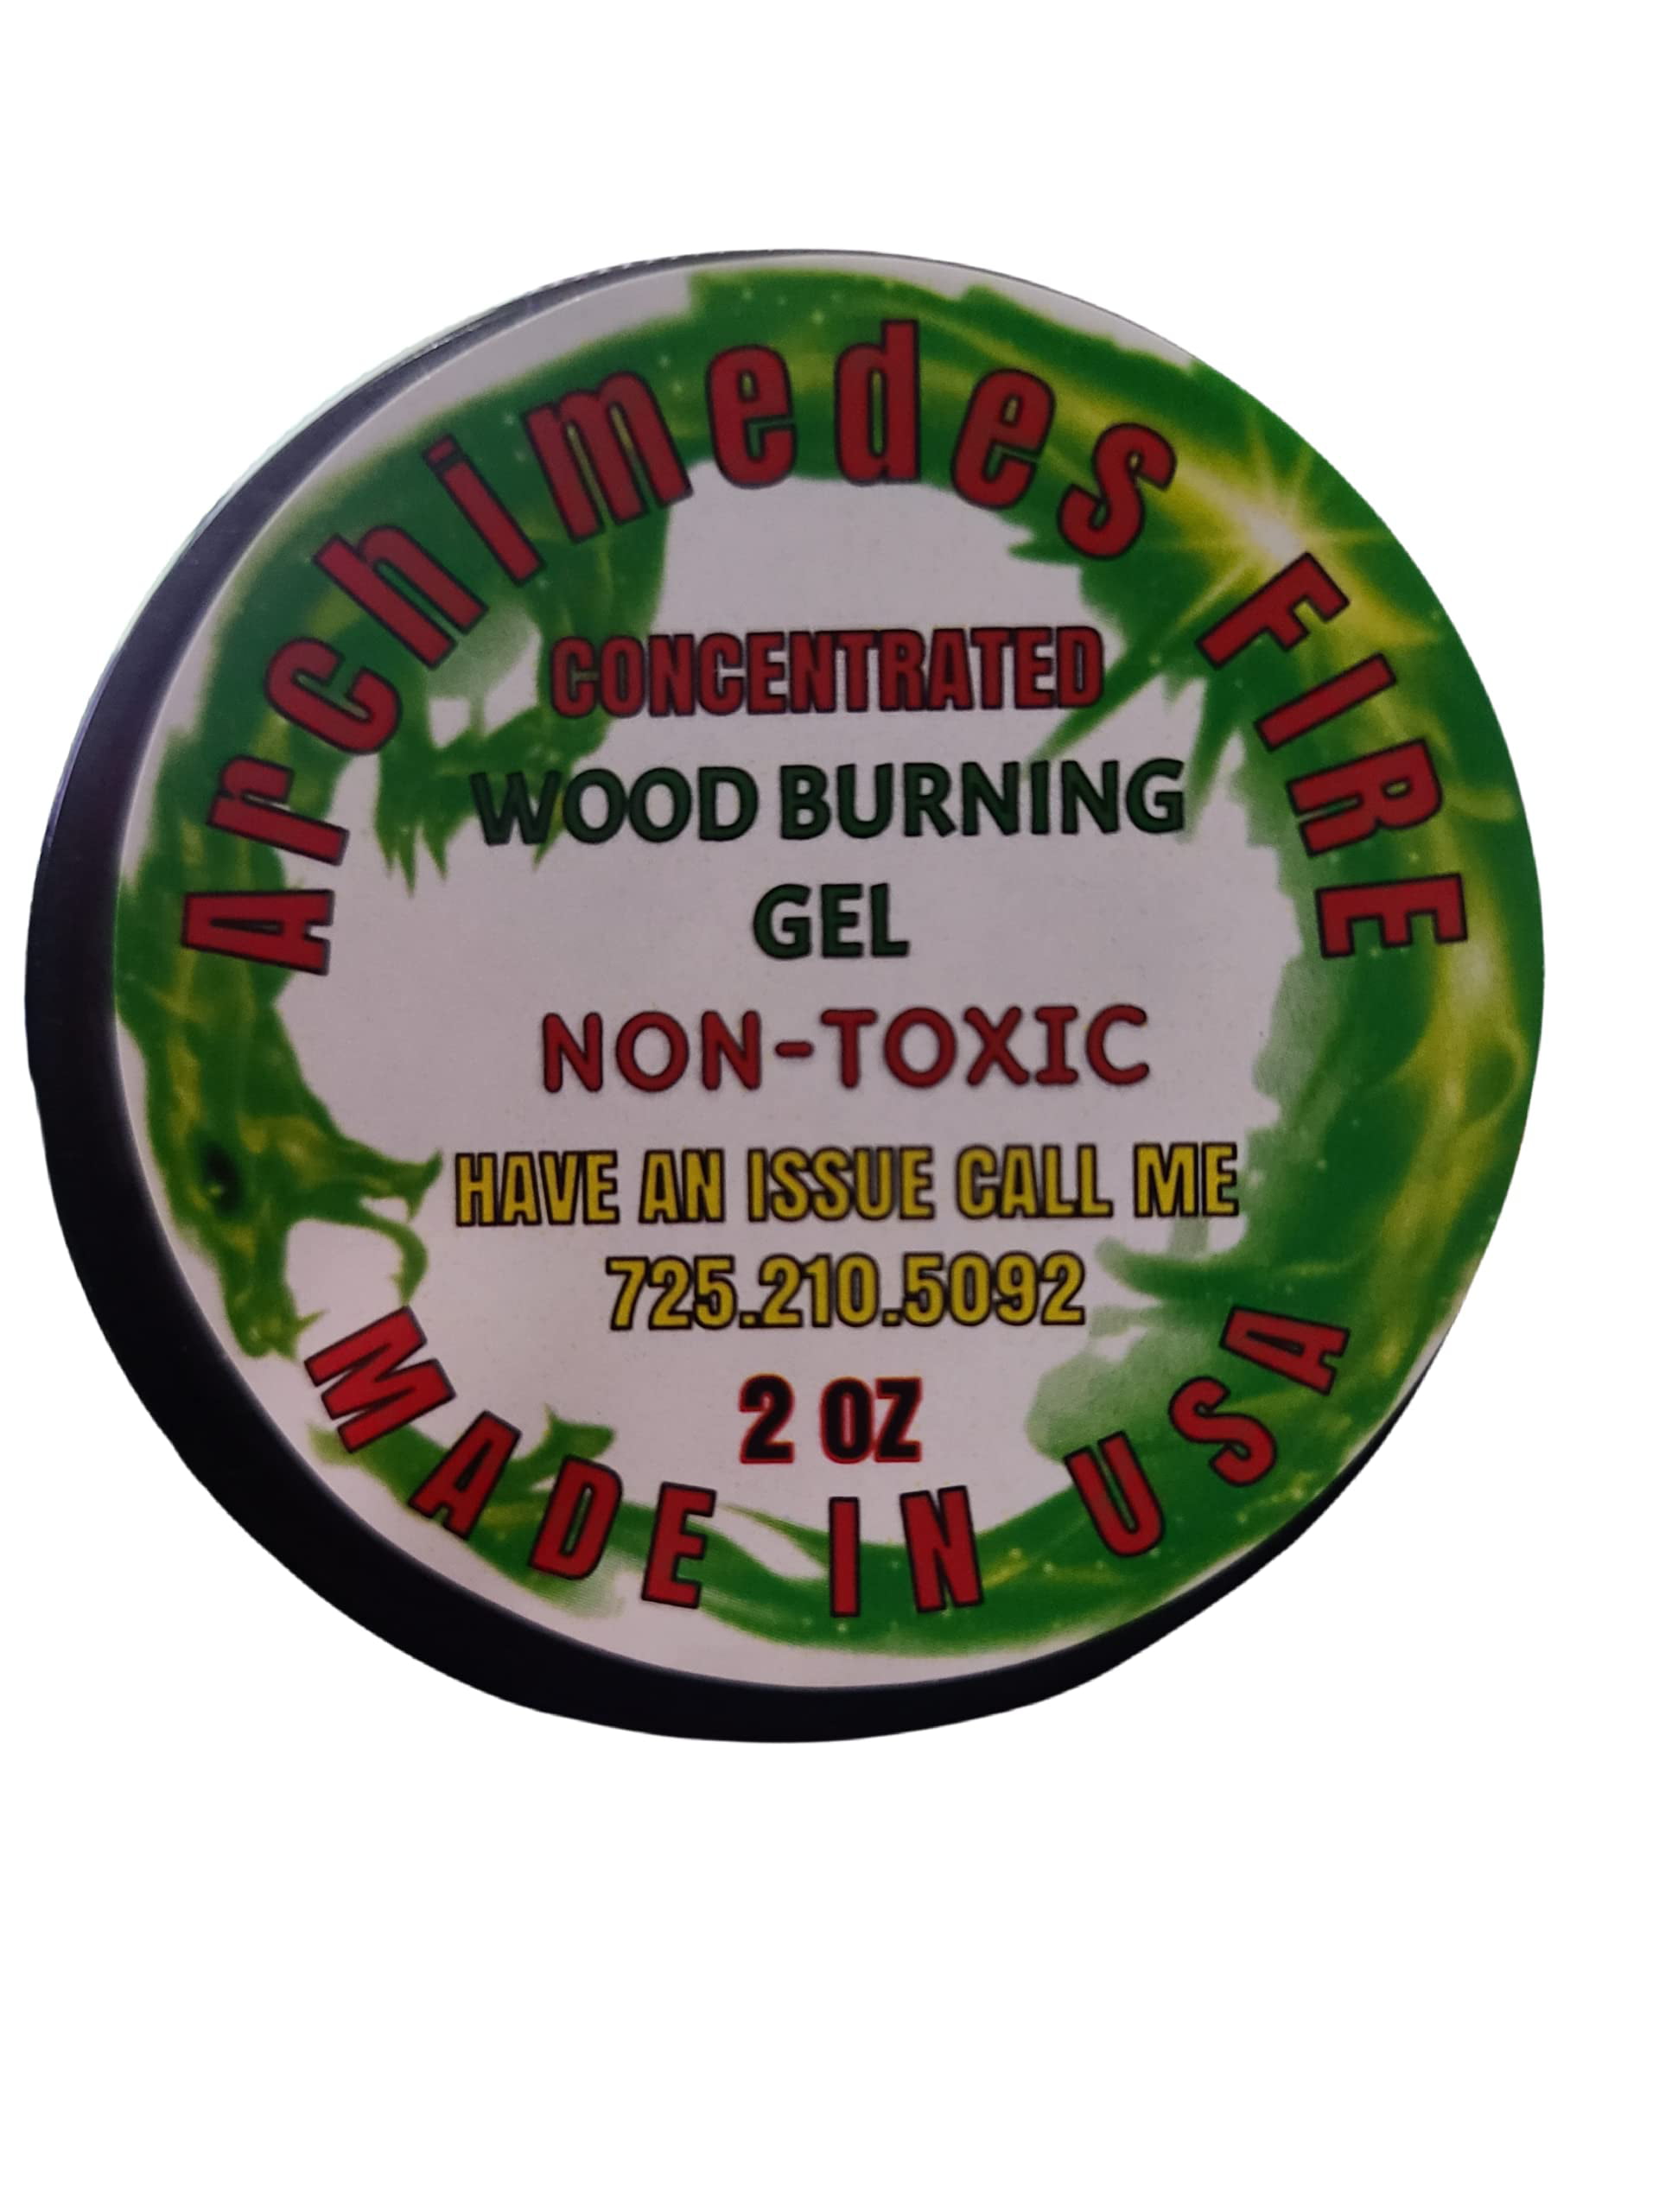 Versatile Wood Burning Gel Kit - 4 OZ - Multi-Surface - Non-Toxic